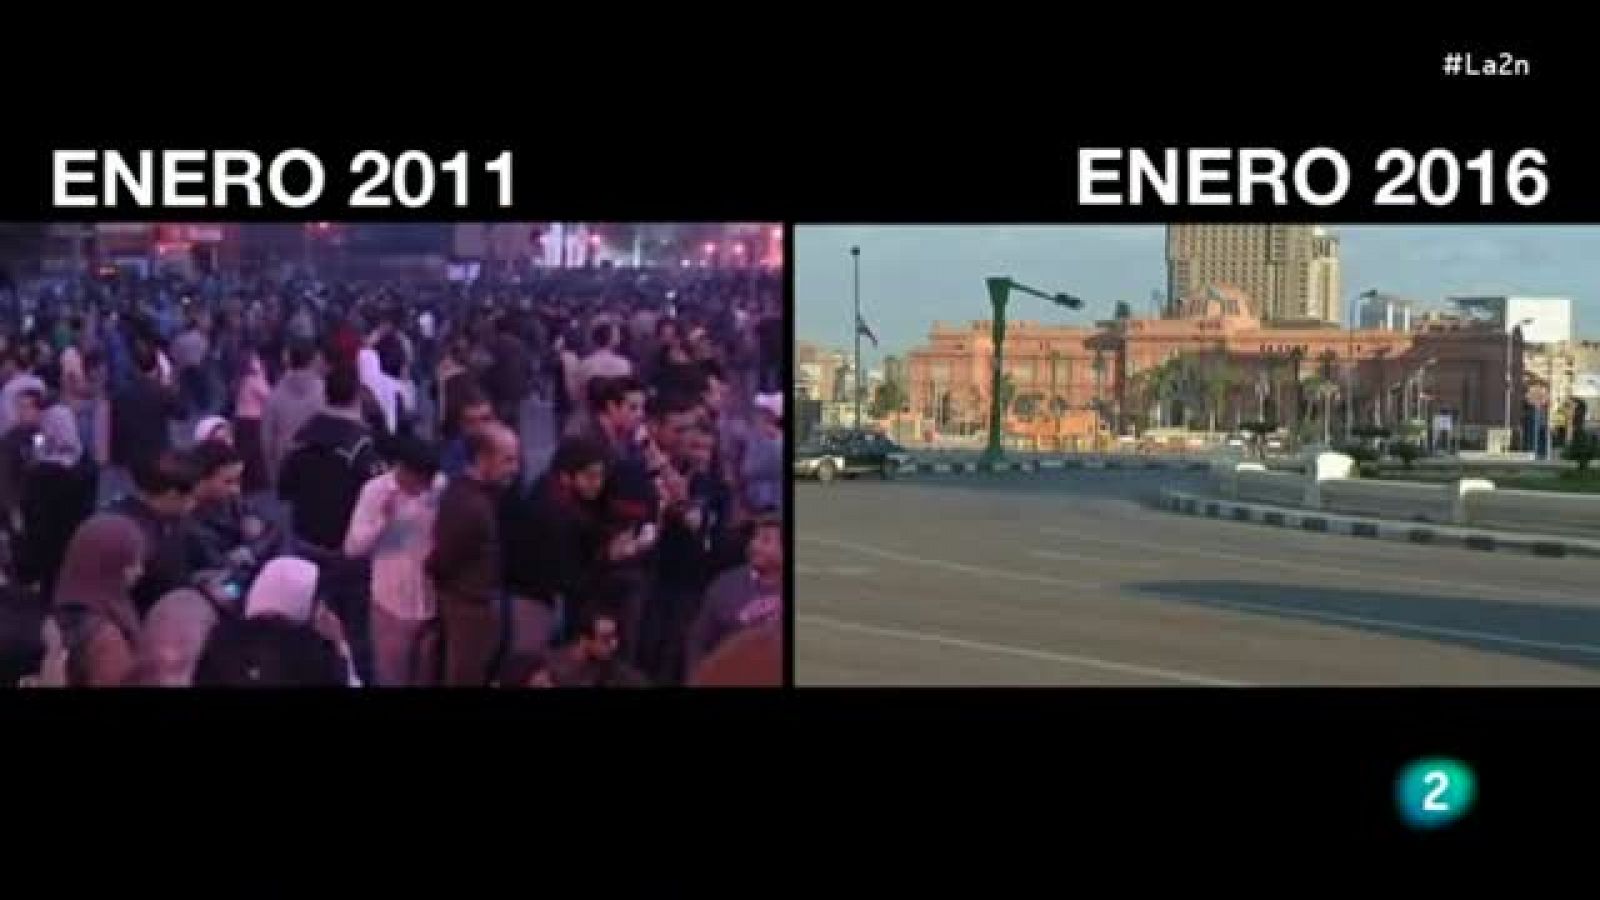 La 2 Noticias - Los sueños rotos de Tahrir